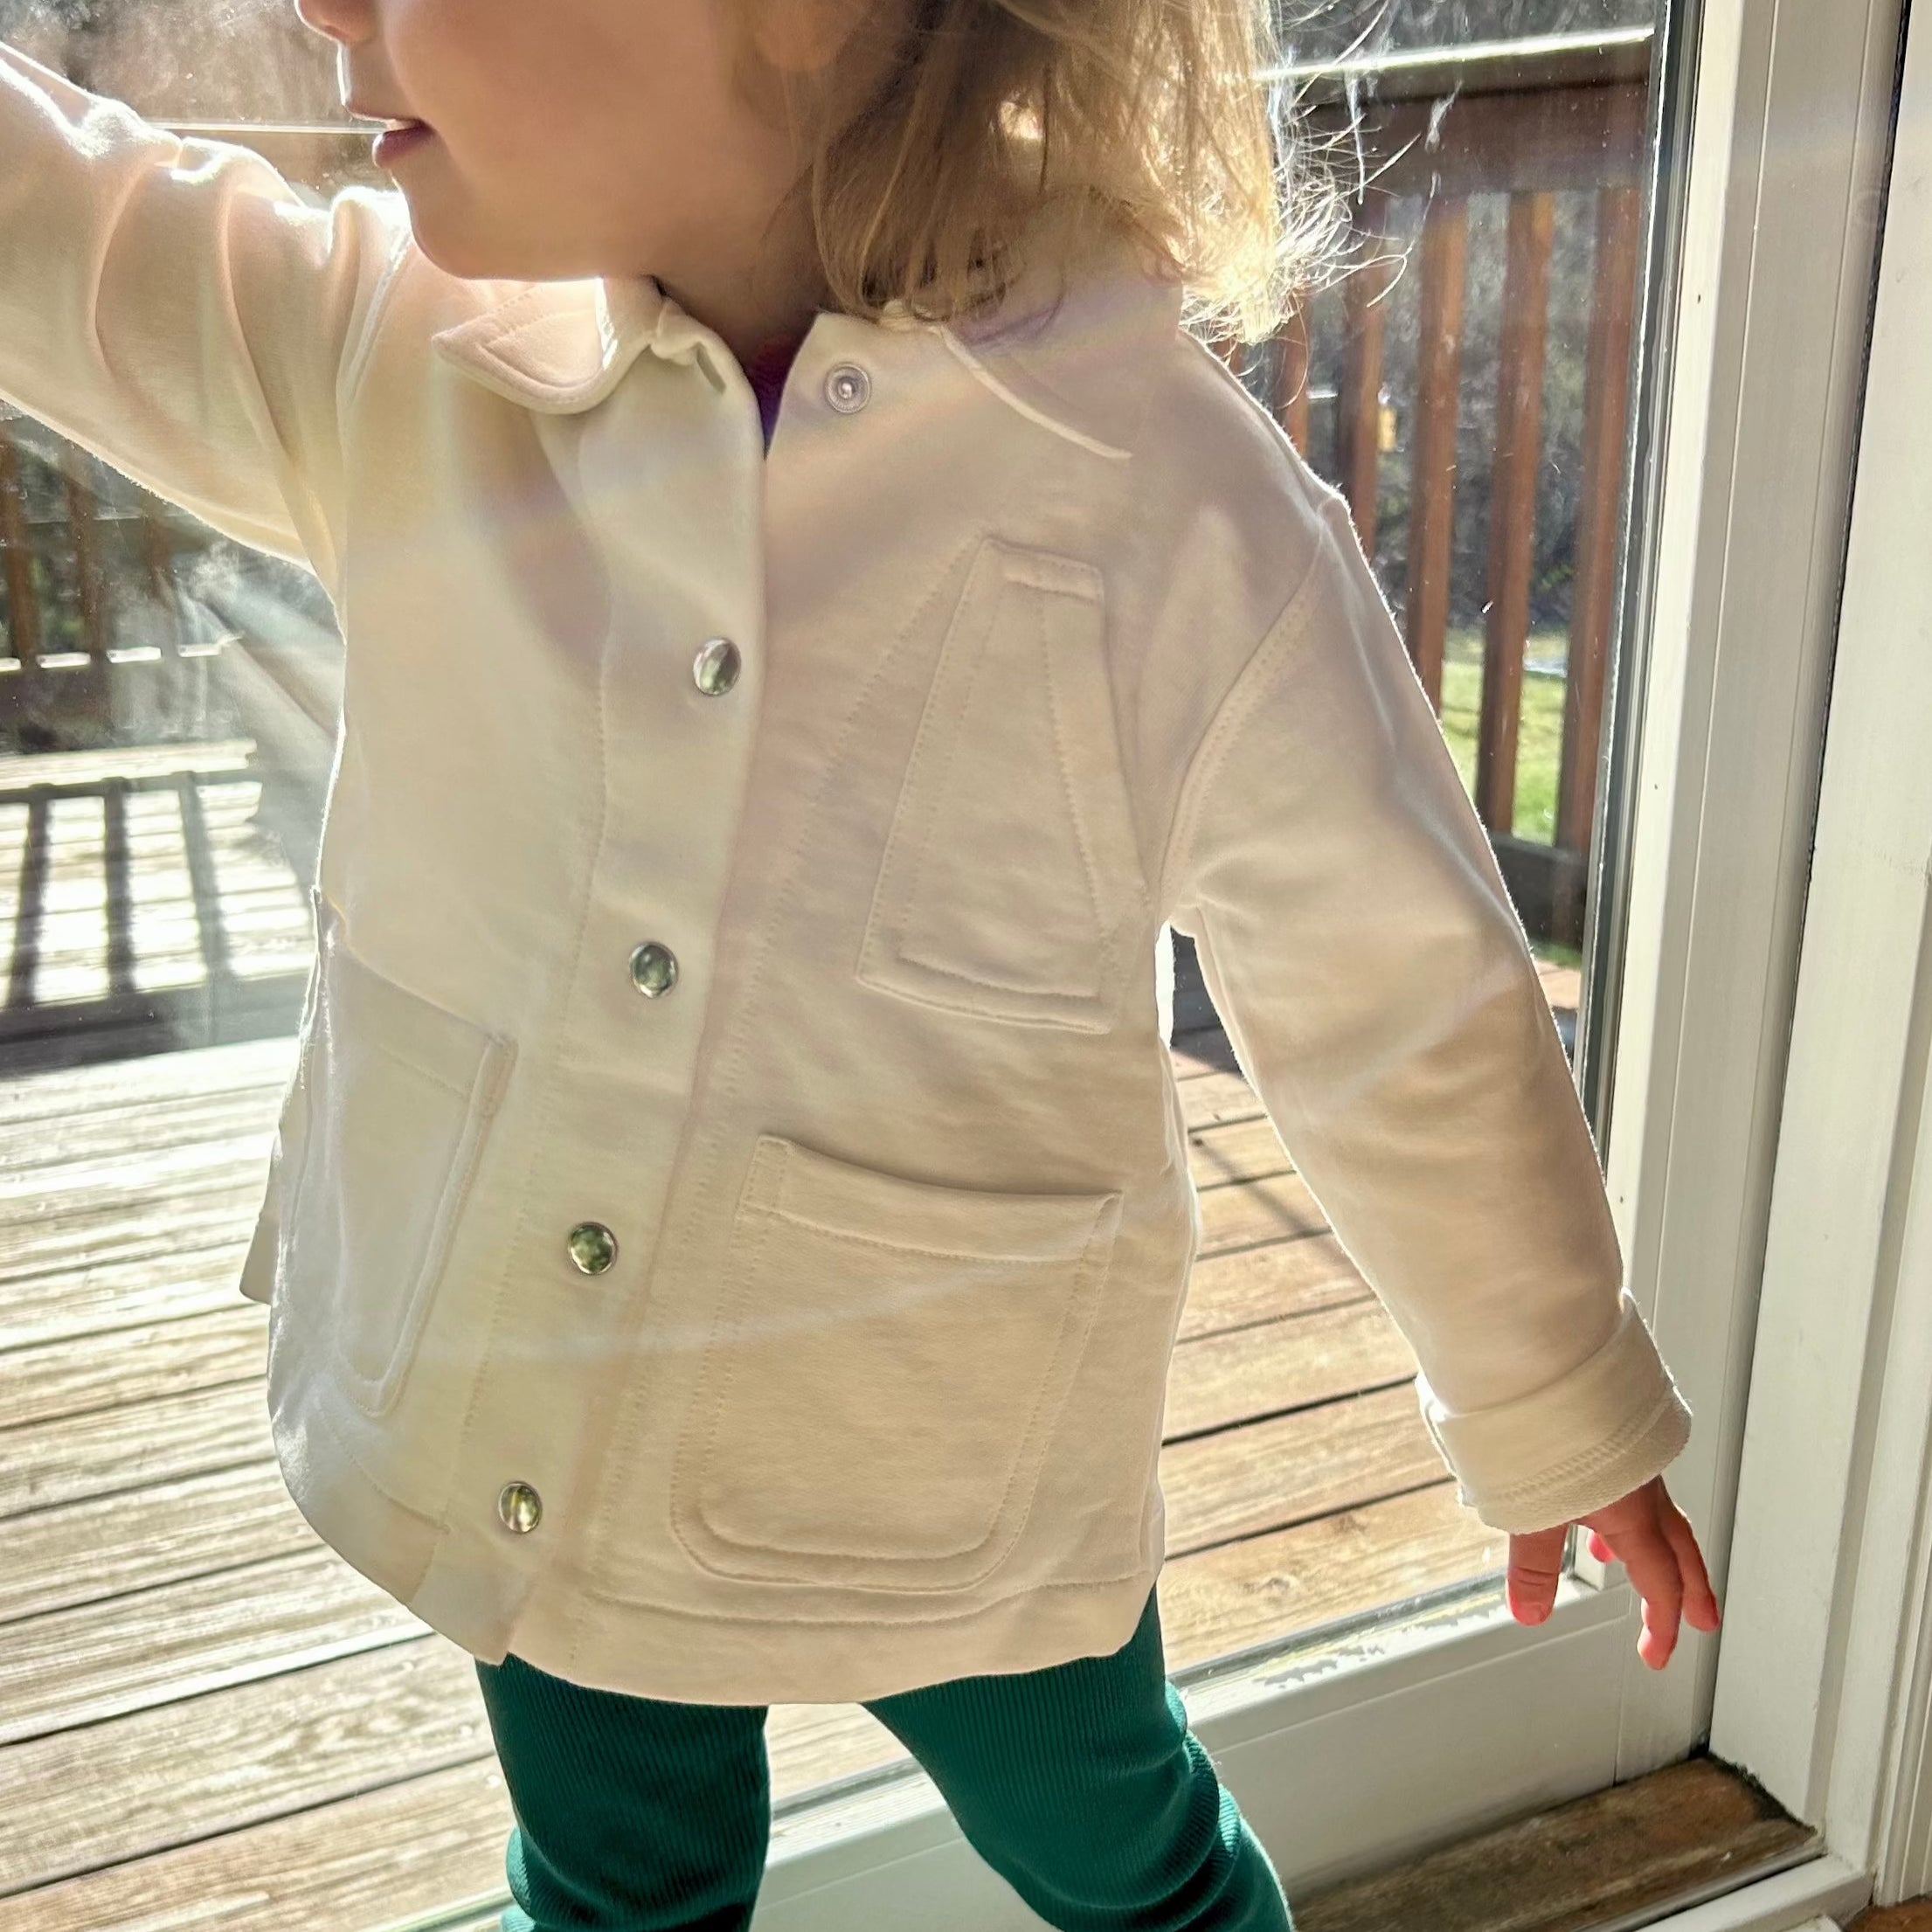 toddler wearing white jacket